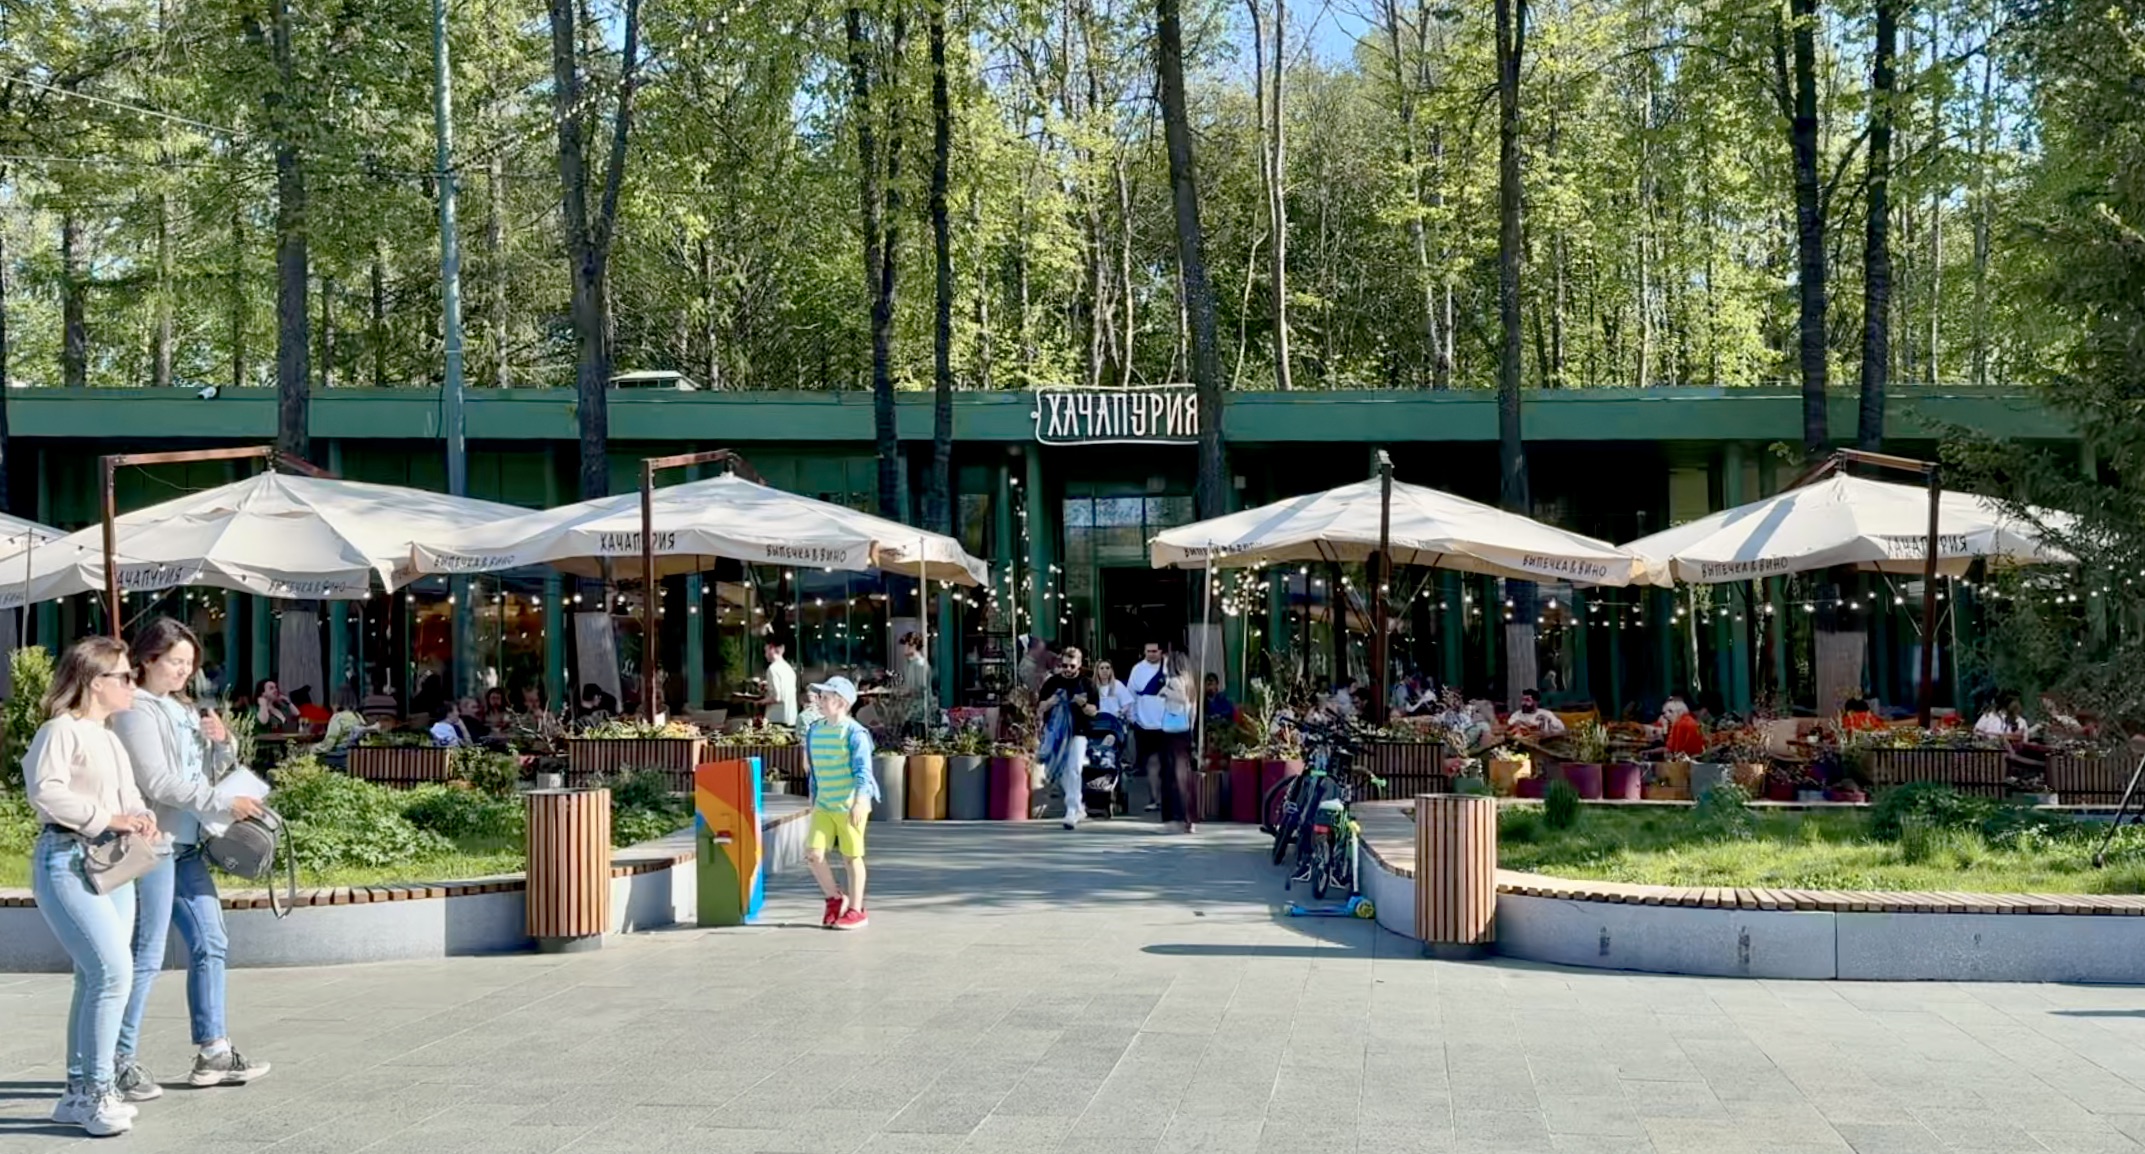 Прогулка по парку "Швейцария" - огромный кот, кафе, весенний вид, фонтан, аллея берёз. Н.Новгород